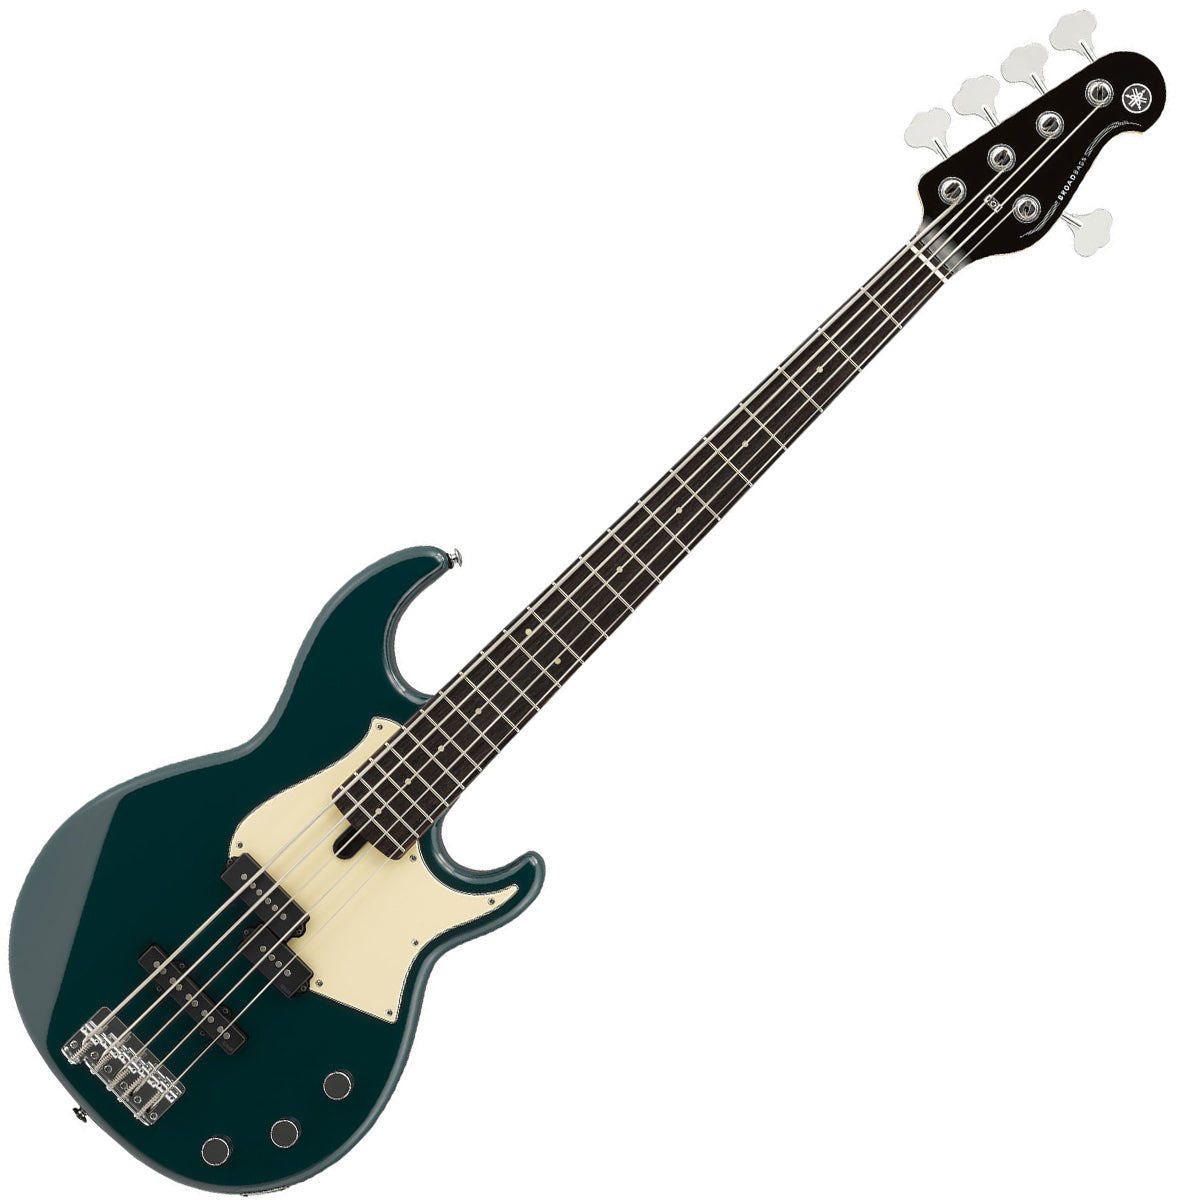 Yamaha BB 435 Electric 5-String Bass Guitar - Teal Blue